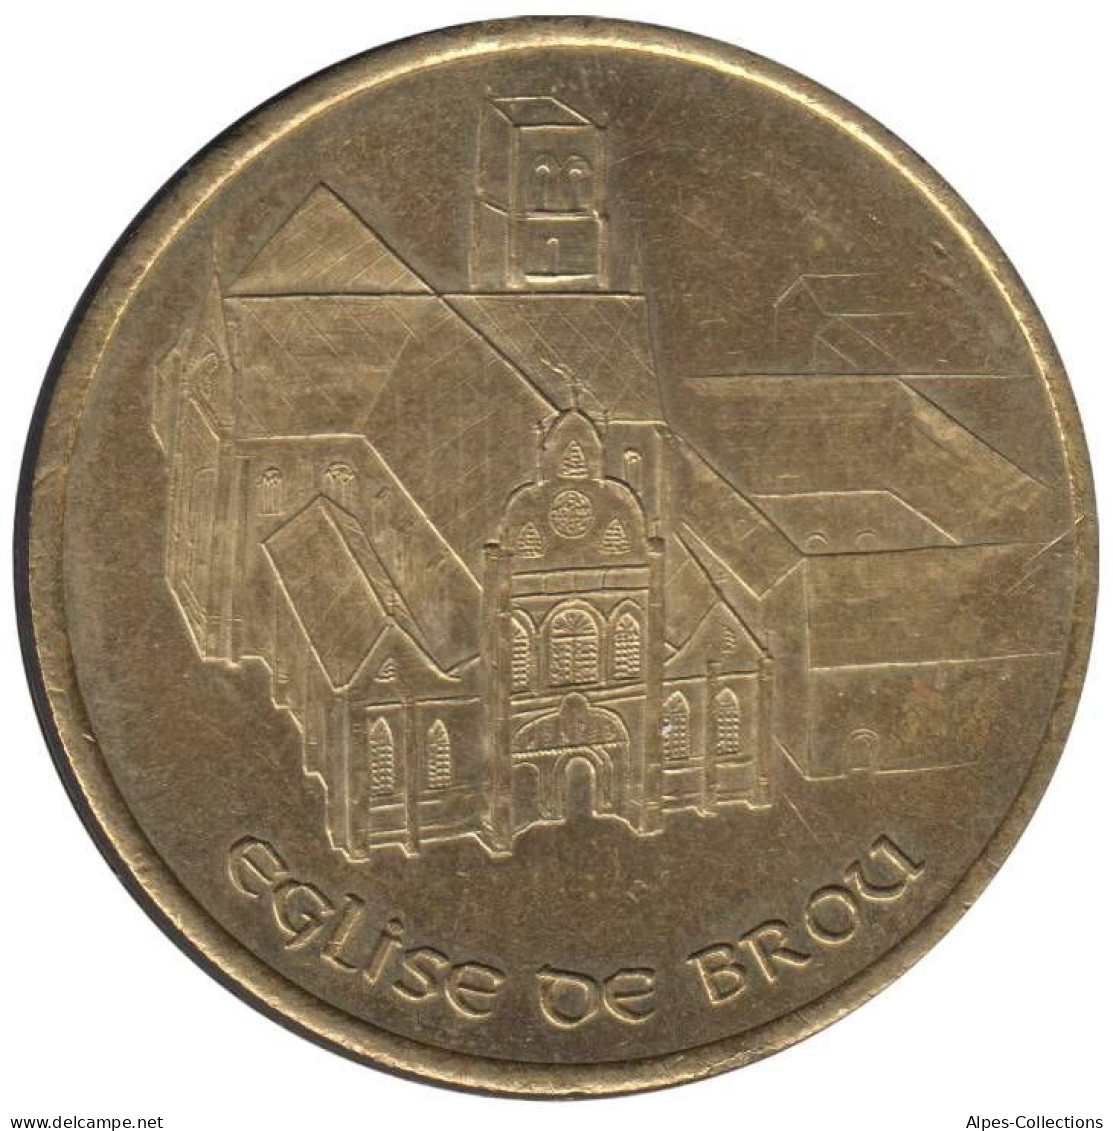 BOURG EN BRESSE - EU0010.5 - 1 EURO DES VILLES - Réf: T266 - 1997 - Euros Des Villes